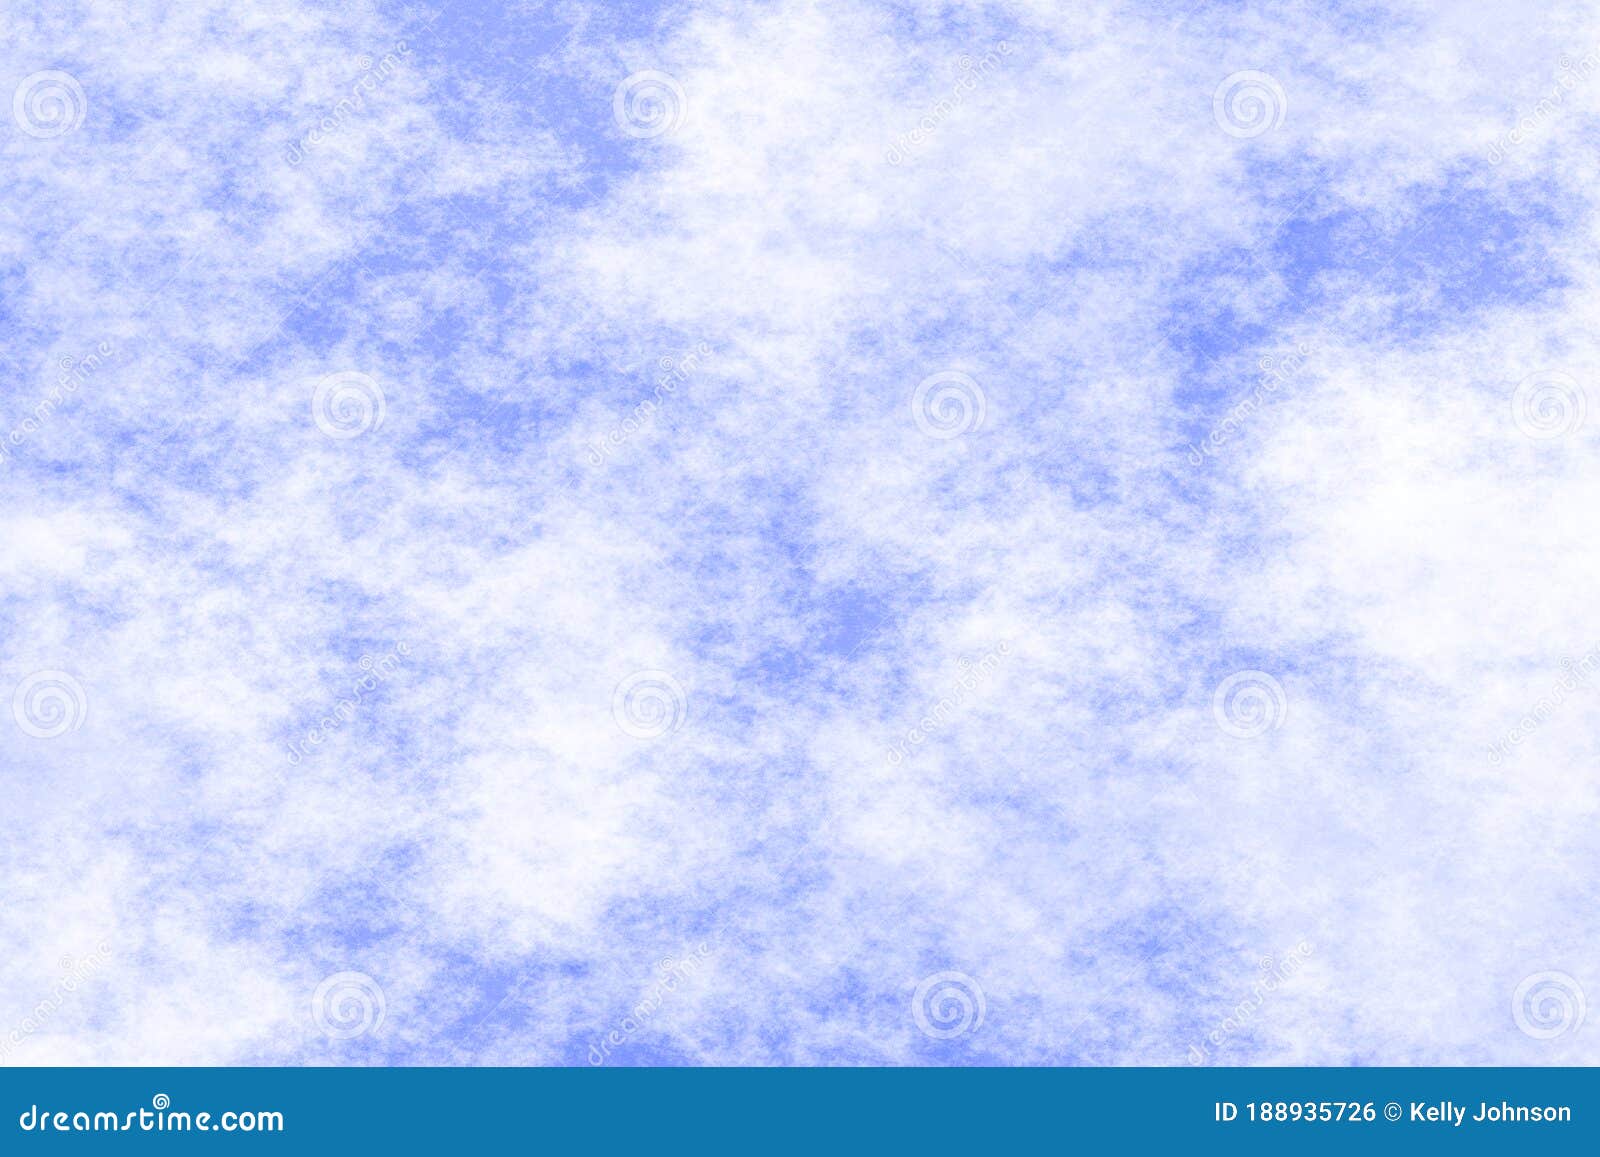 A Blue Cloud Texture stock photo. Image of cloudscape - 188935726